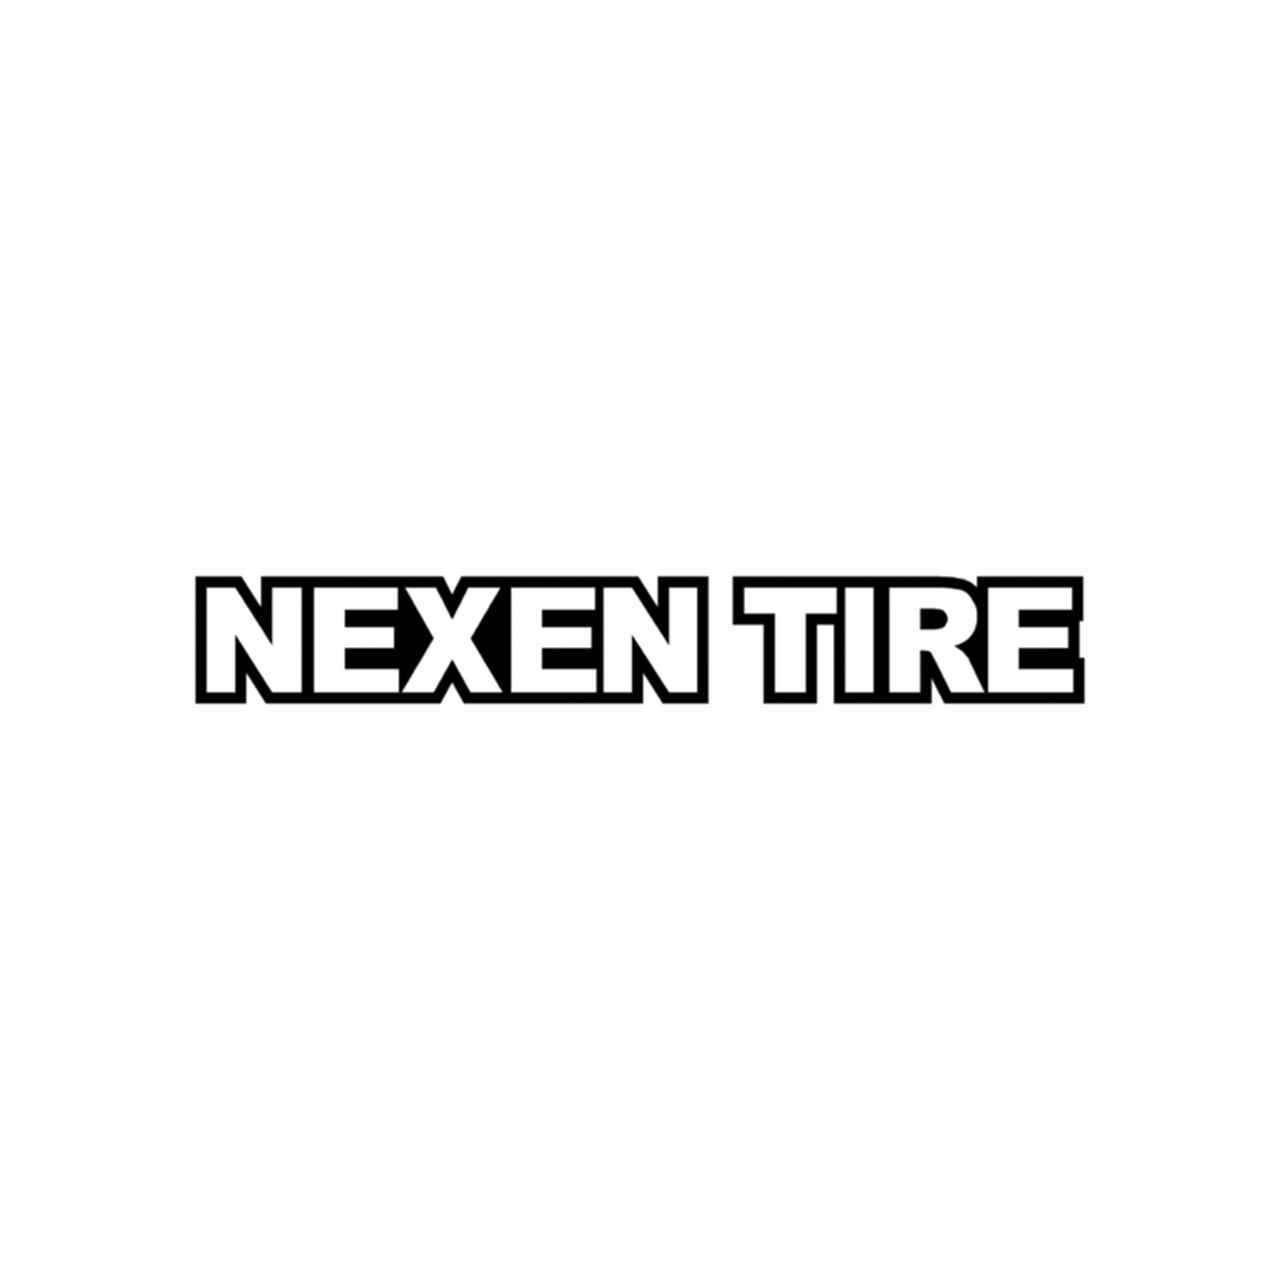 Nexen Logo - Nexen Tire Contour Vinyl Decal